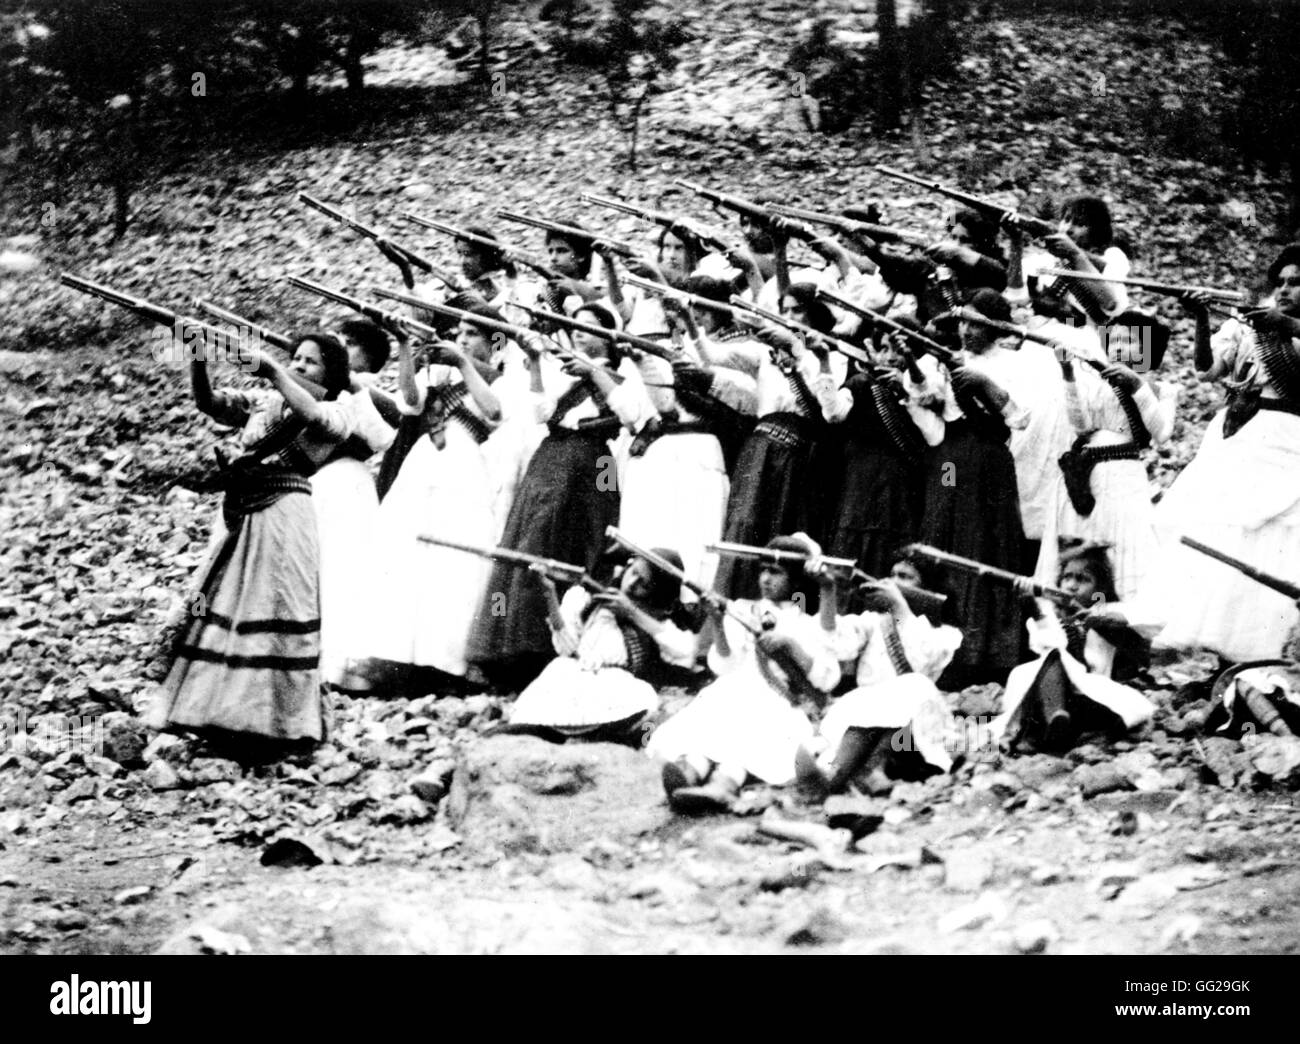 Les femmes soldats, connu sous le nom de 'Las Adelitas', lors de la révolution mexicaine (1910-1930) 1911 Mexique Washington. Bibliothèque du Congrès Banque D'Images